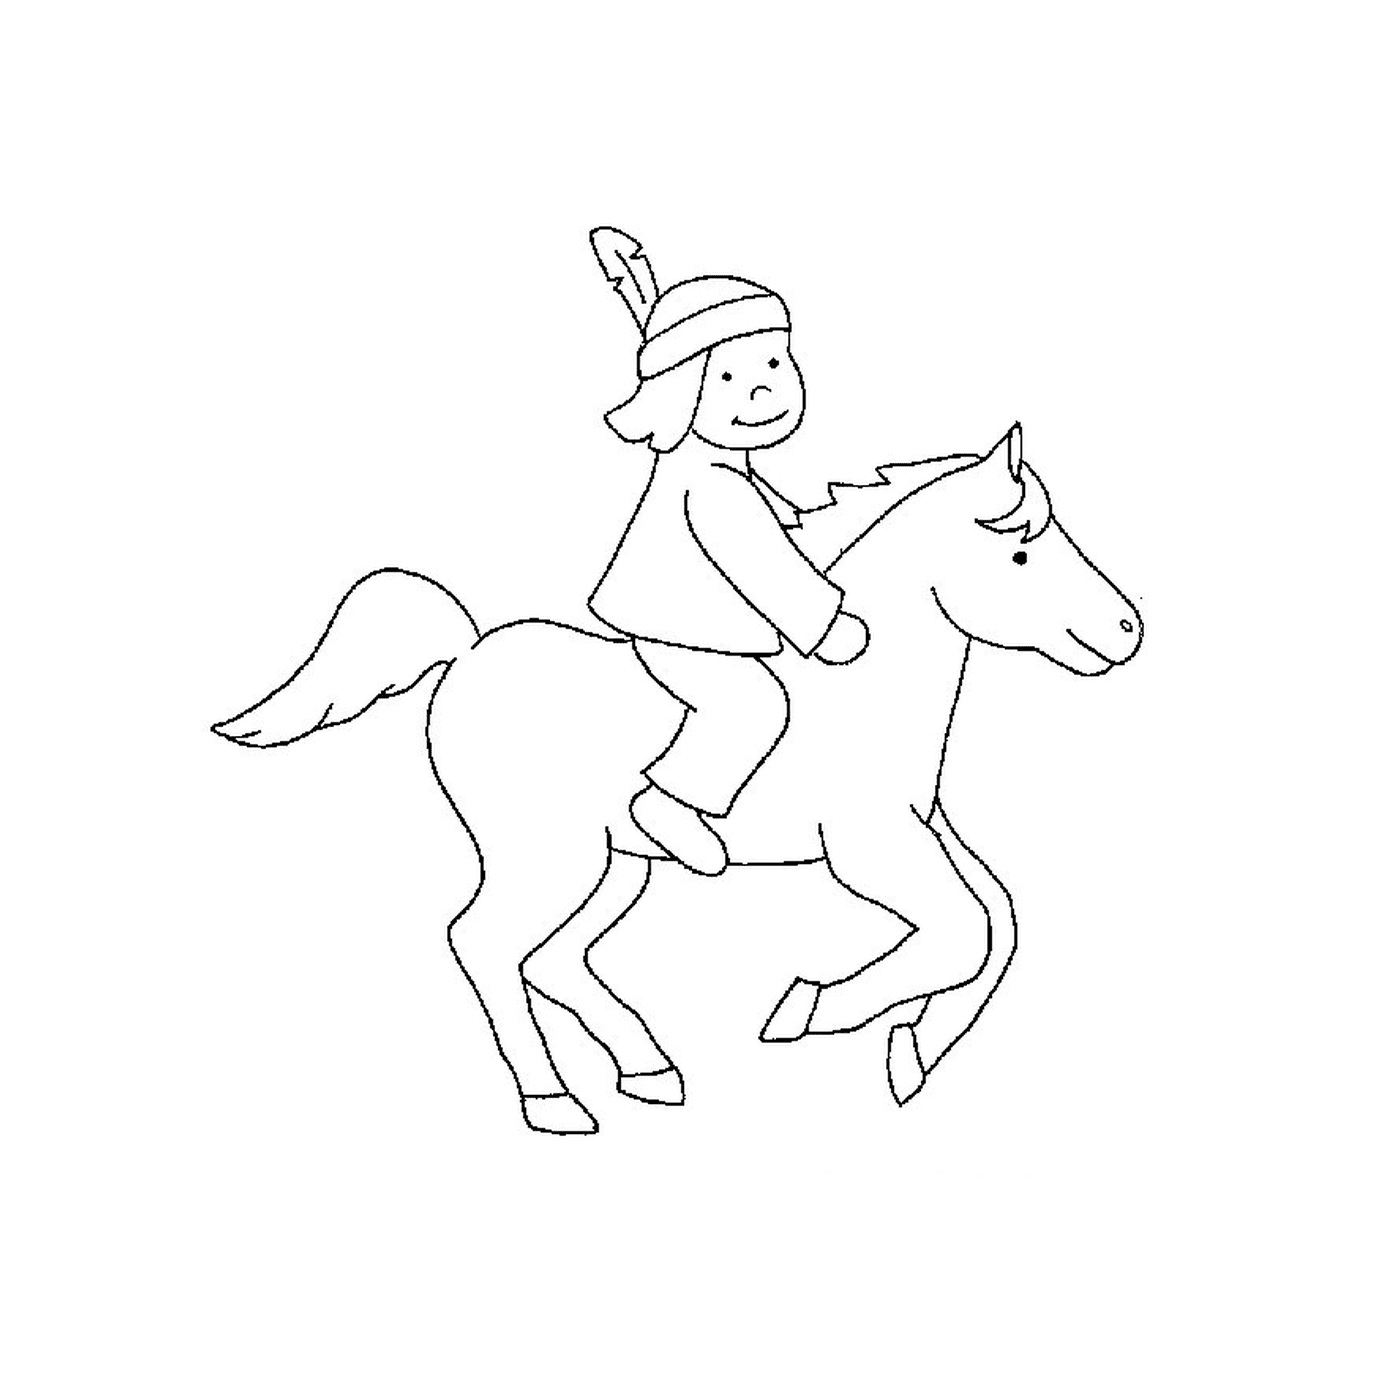   Indien à cheval - Une personne monte un cheval 